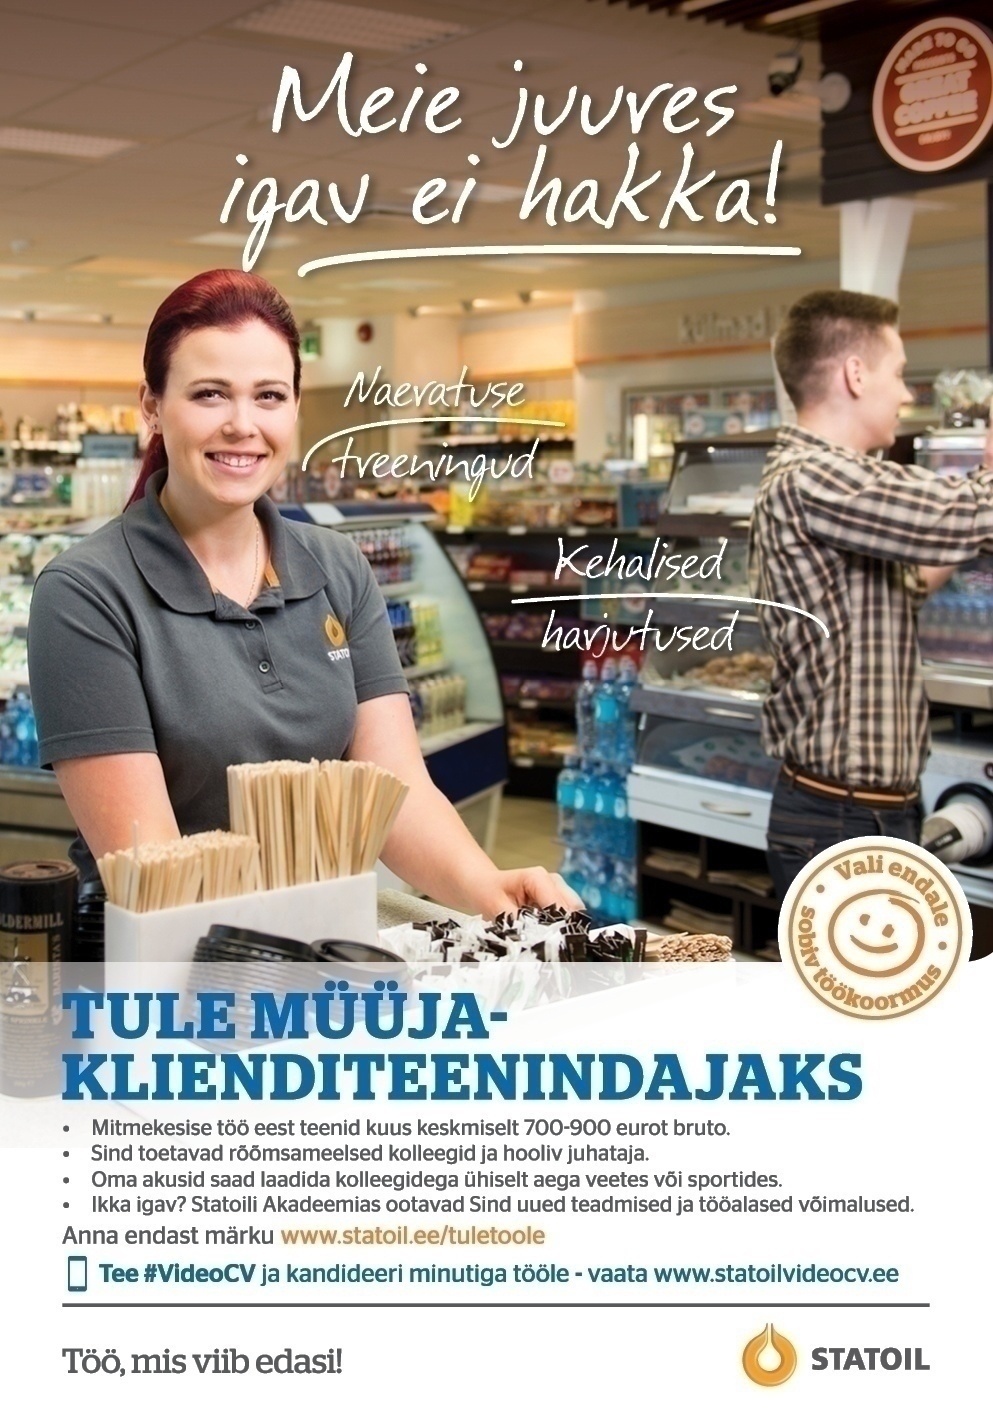 Circle K Eesti AS Müüja-klienditeenindaja Uuemõisa teenindusjaama